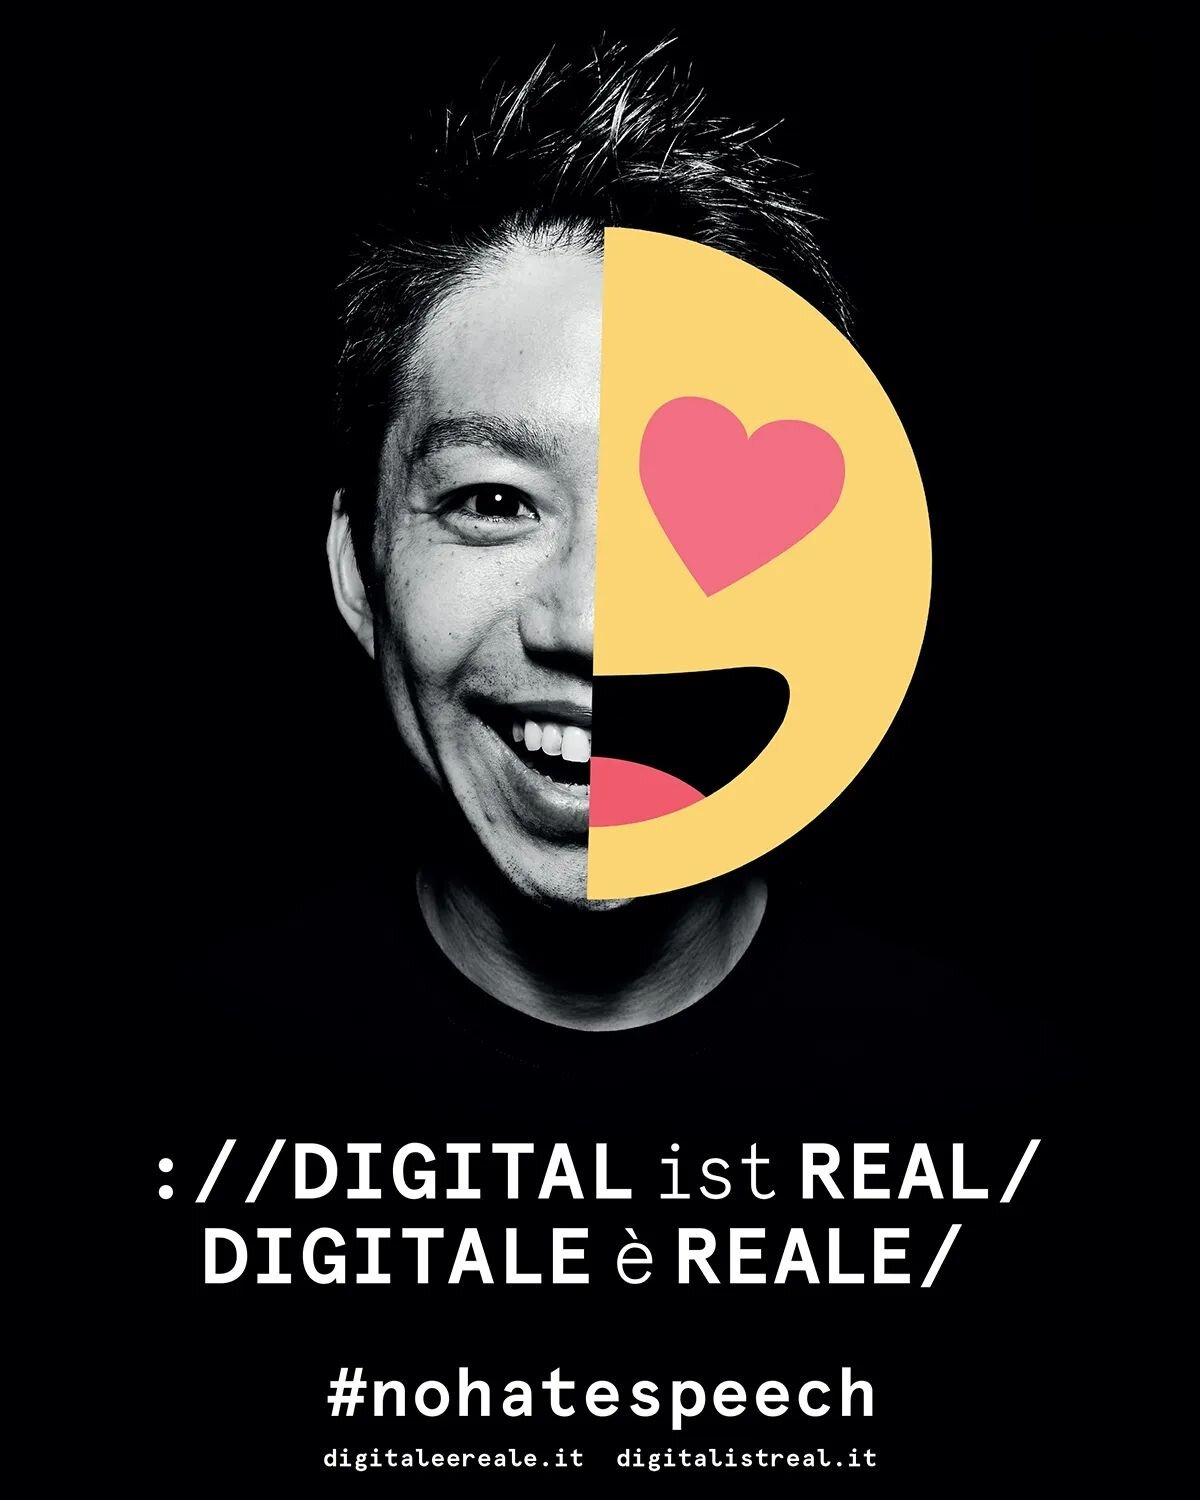 COMING SOON ON
🇩🇪 www.digitalistreal.it
🇮🇹 www.digitaleereale.it 
❌ #nohatespeech 
#digitalisreal 
#digitalistreal 
#digitale&egrave;reale 
#hatespeech 
#stophatespeech